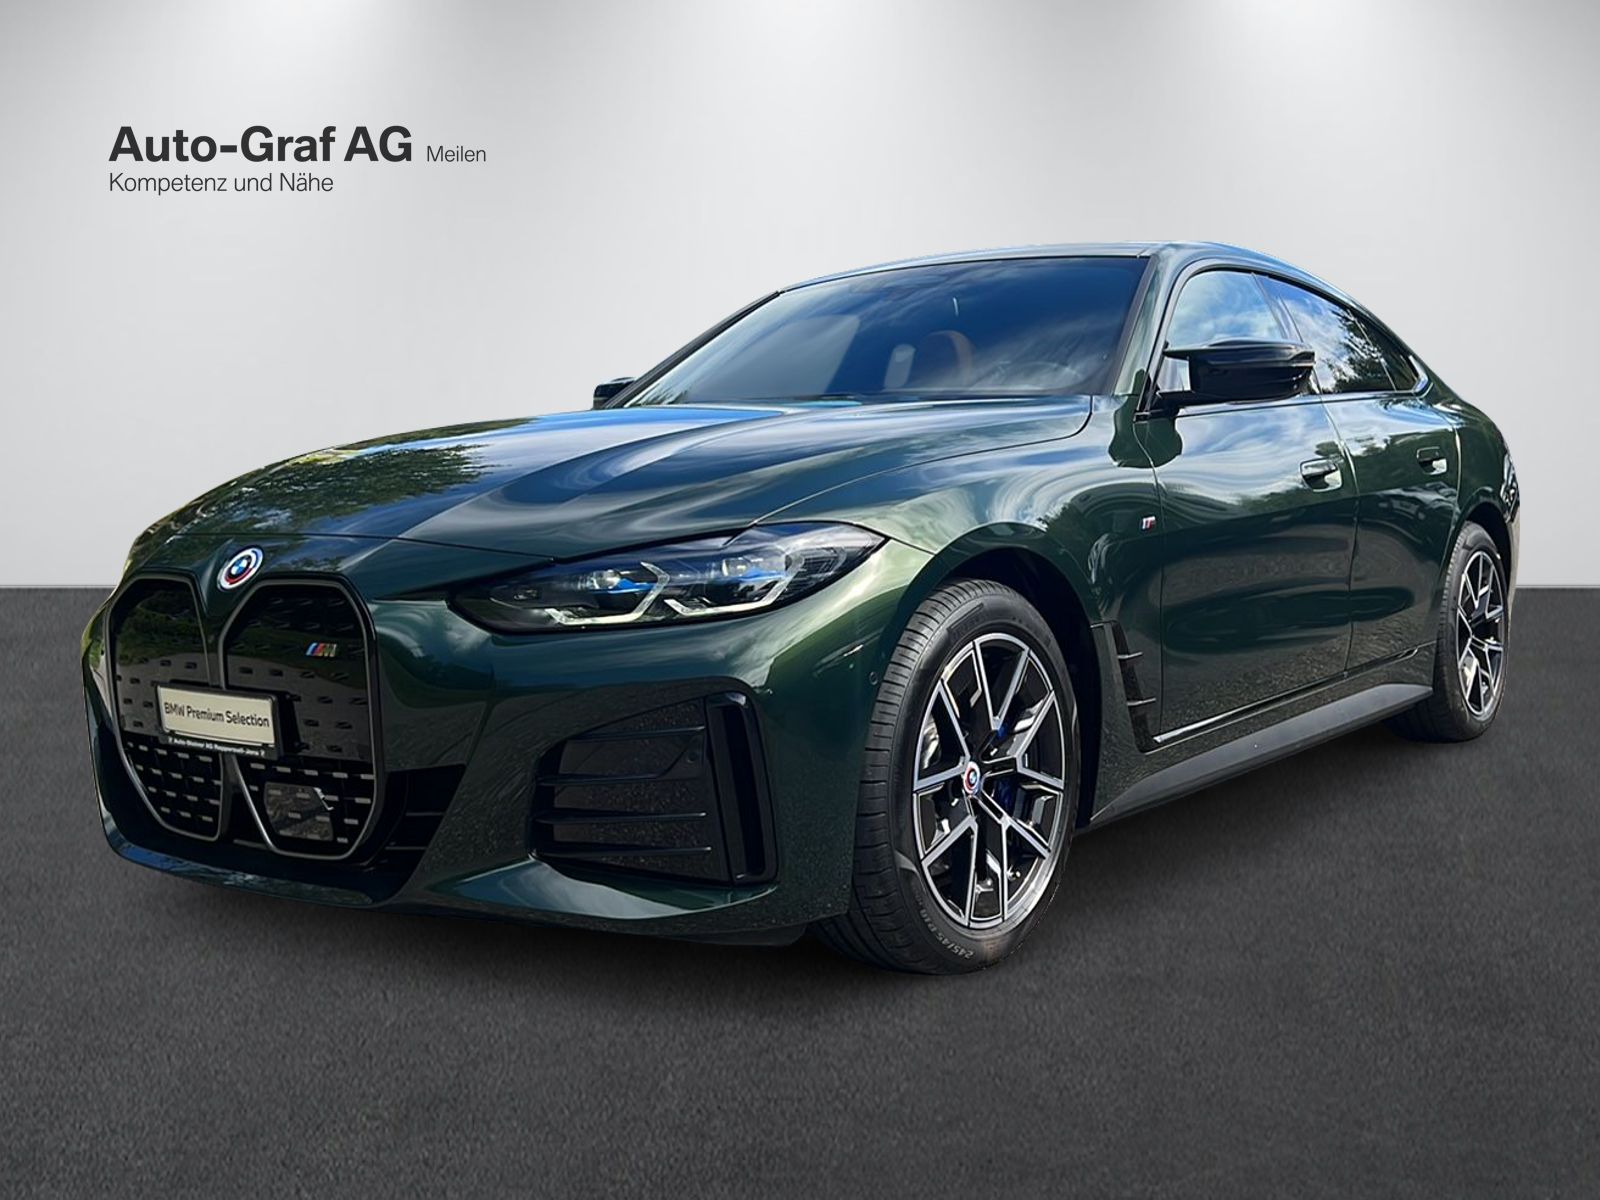 Auto-Graf AG BMW - Kompetenz und Nähe